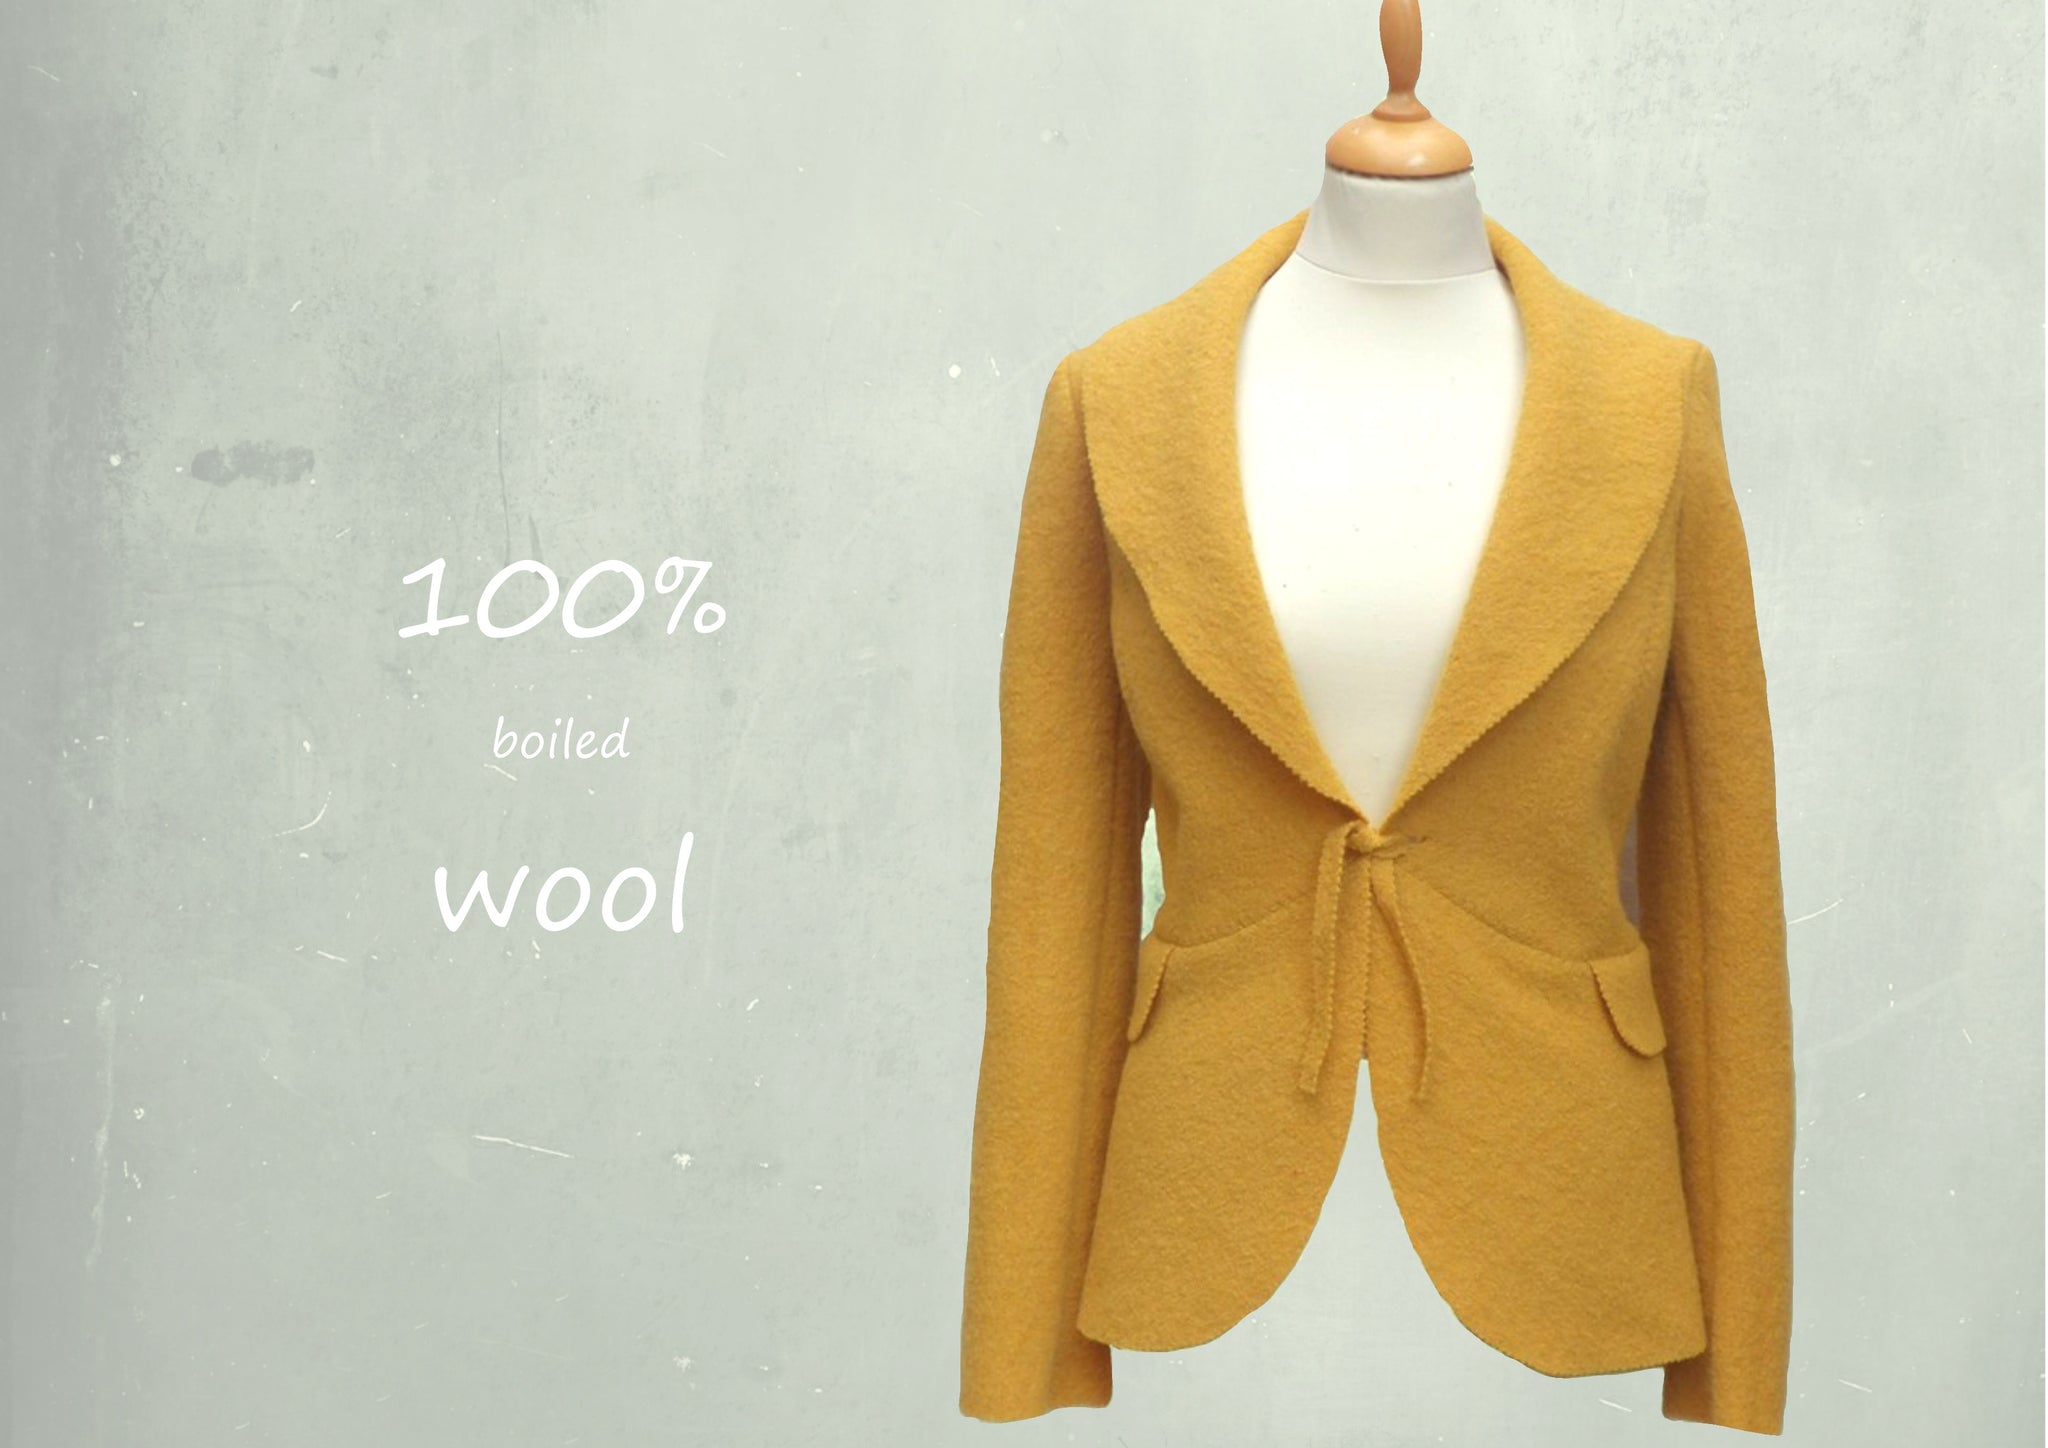 Wollen vest-jasje / cardigan-jacket in boiled wool